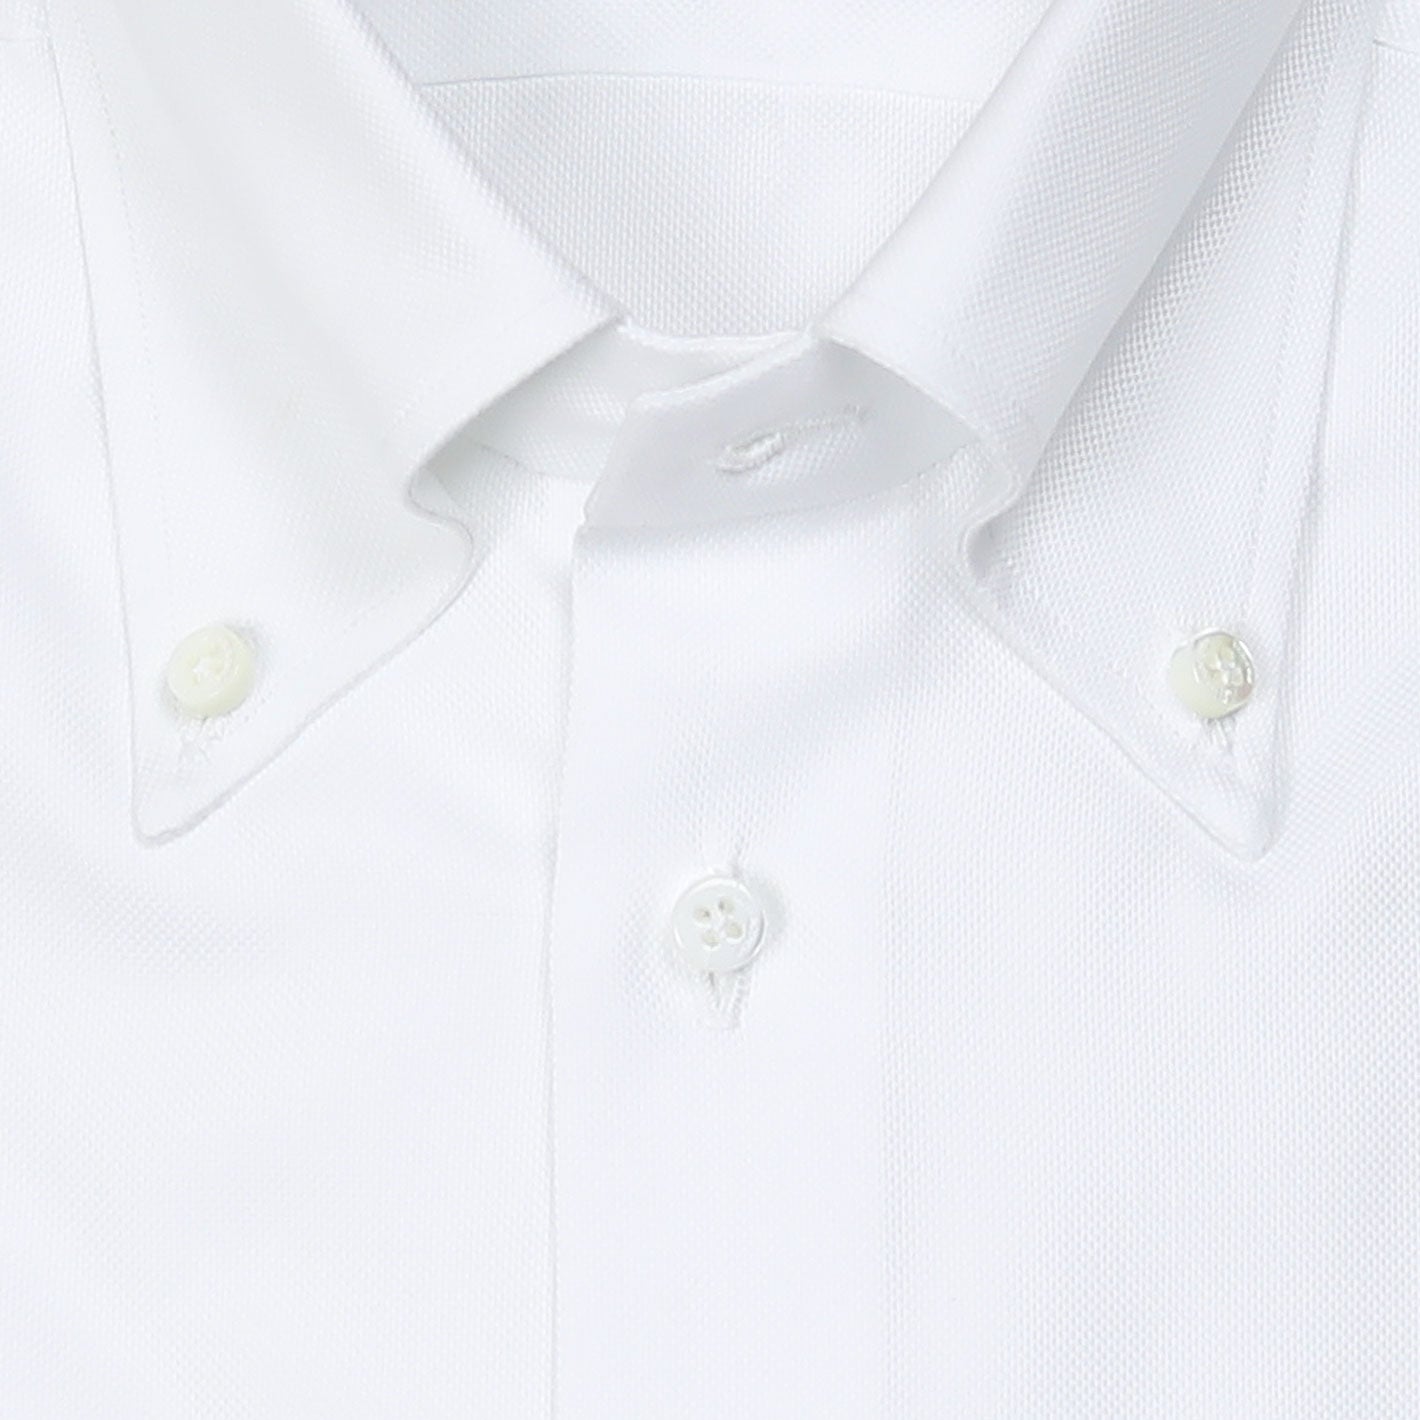 White Striped Oxford Button Down Shirt